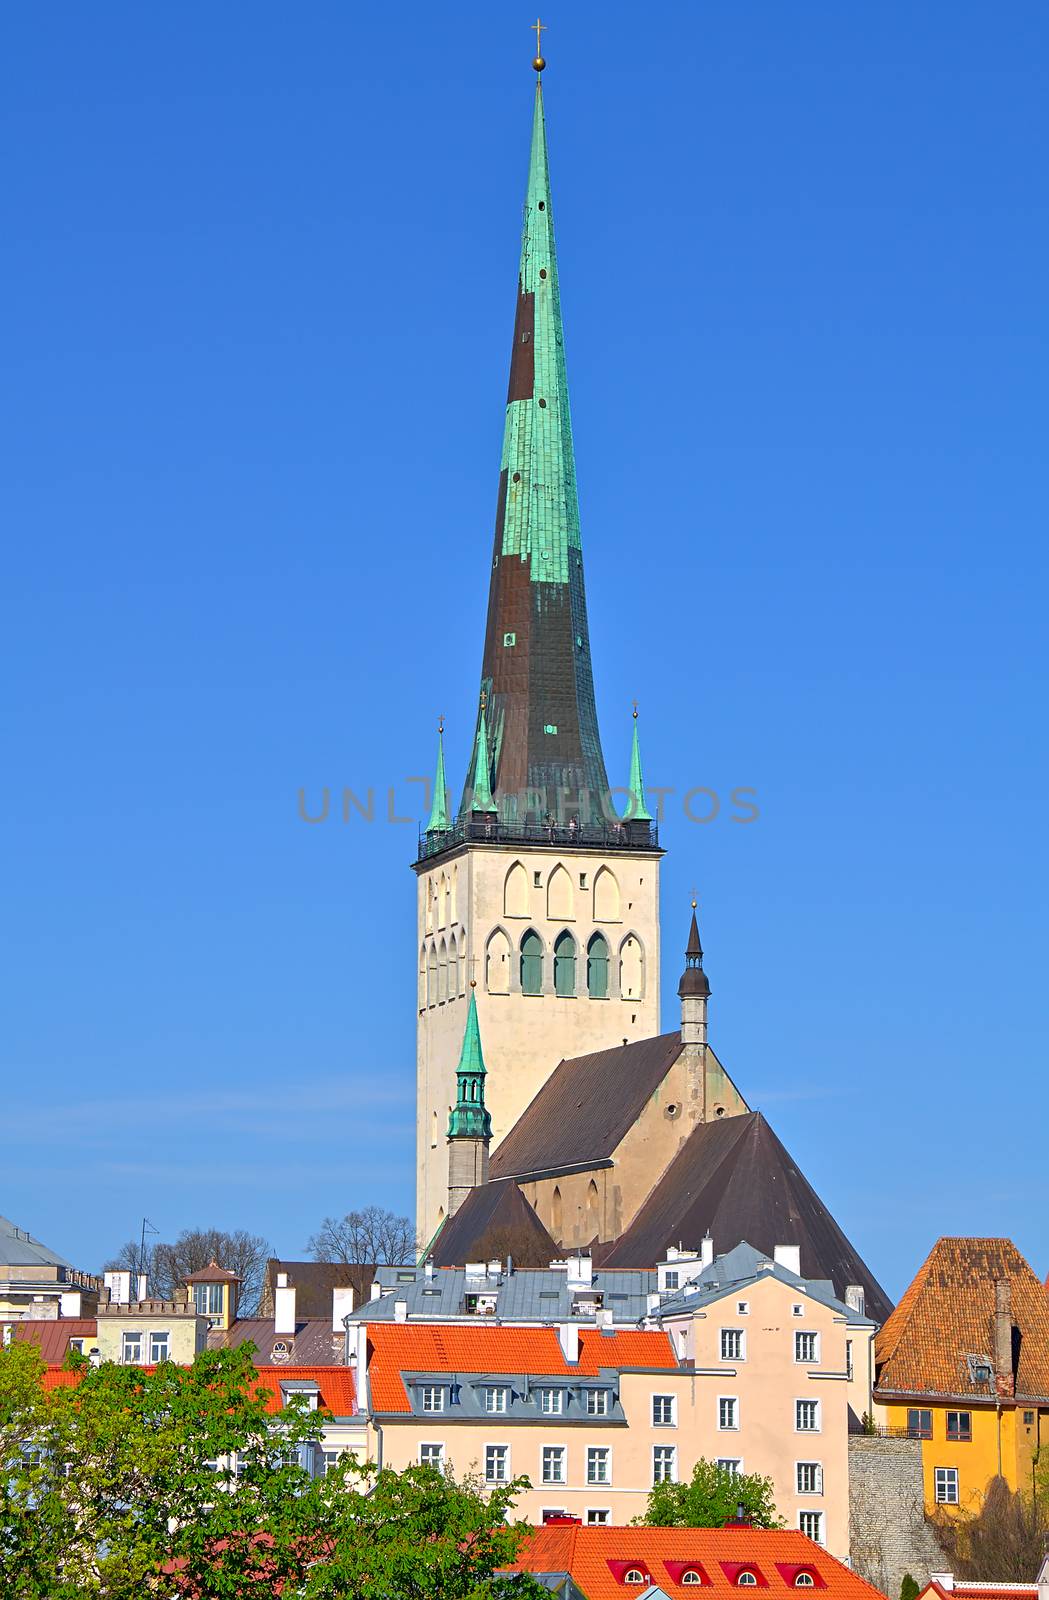 St. Olaf's church in Tallinn by Valokuva24